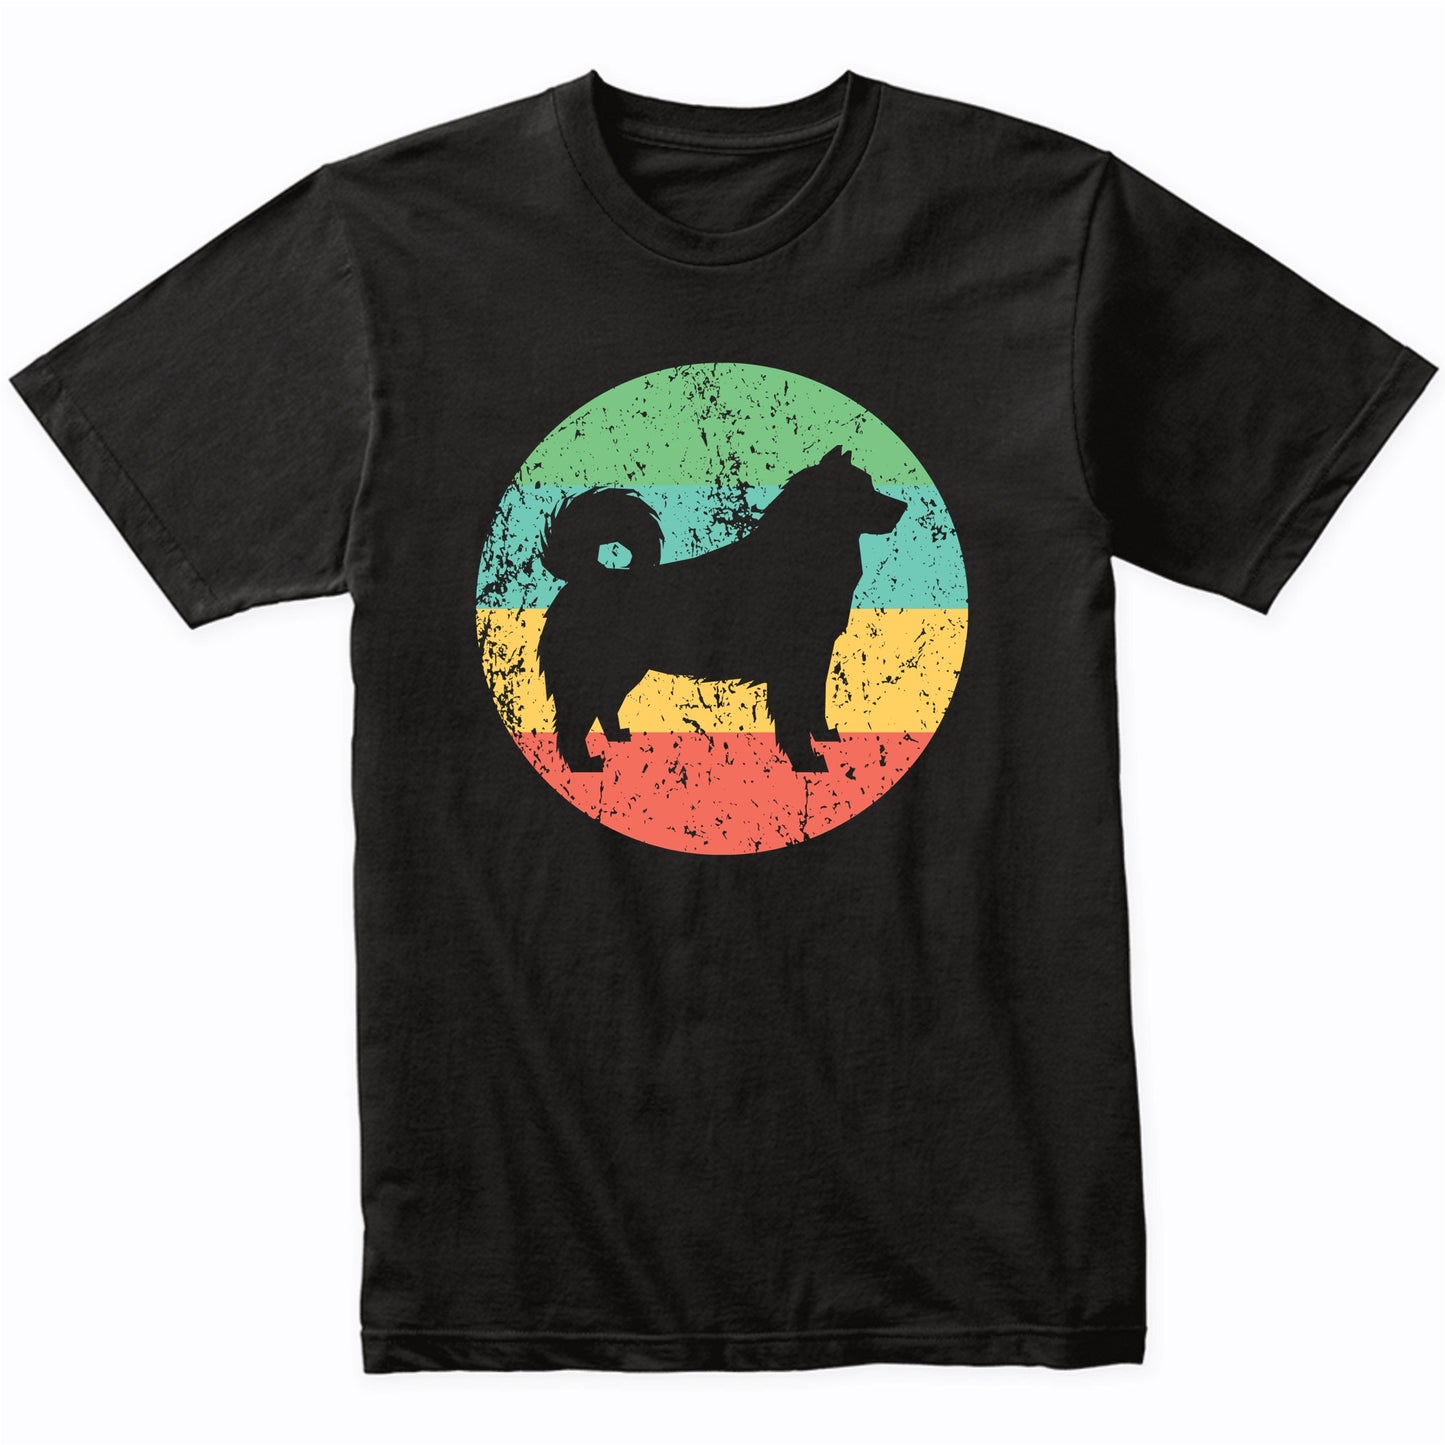 Alaskan Malamute Shirt - Retro Alaskan Malamute Dog T-Shirt